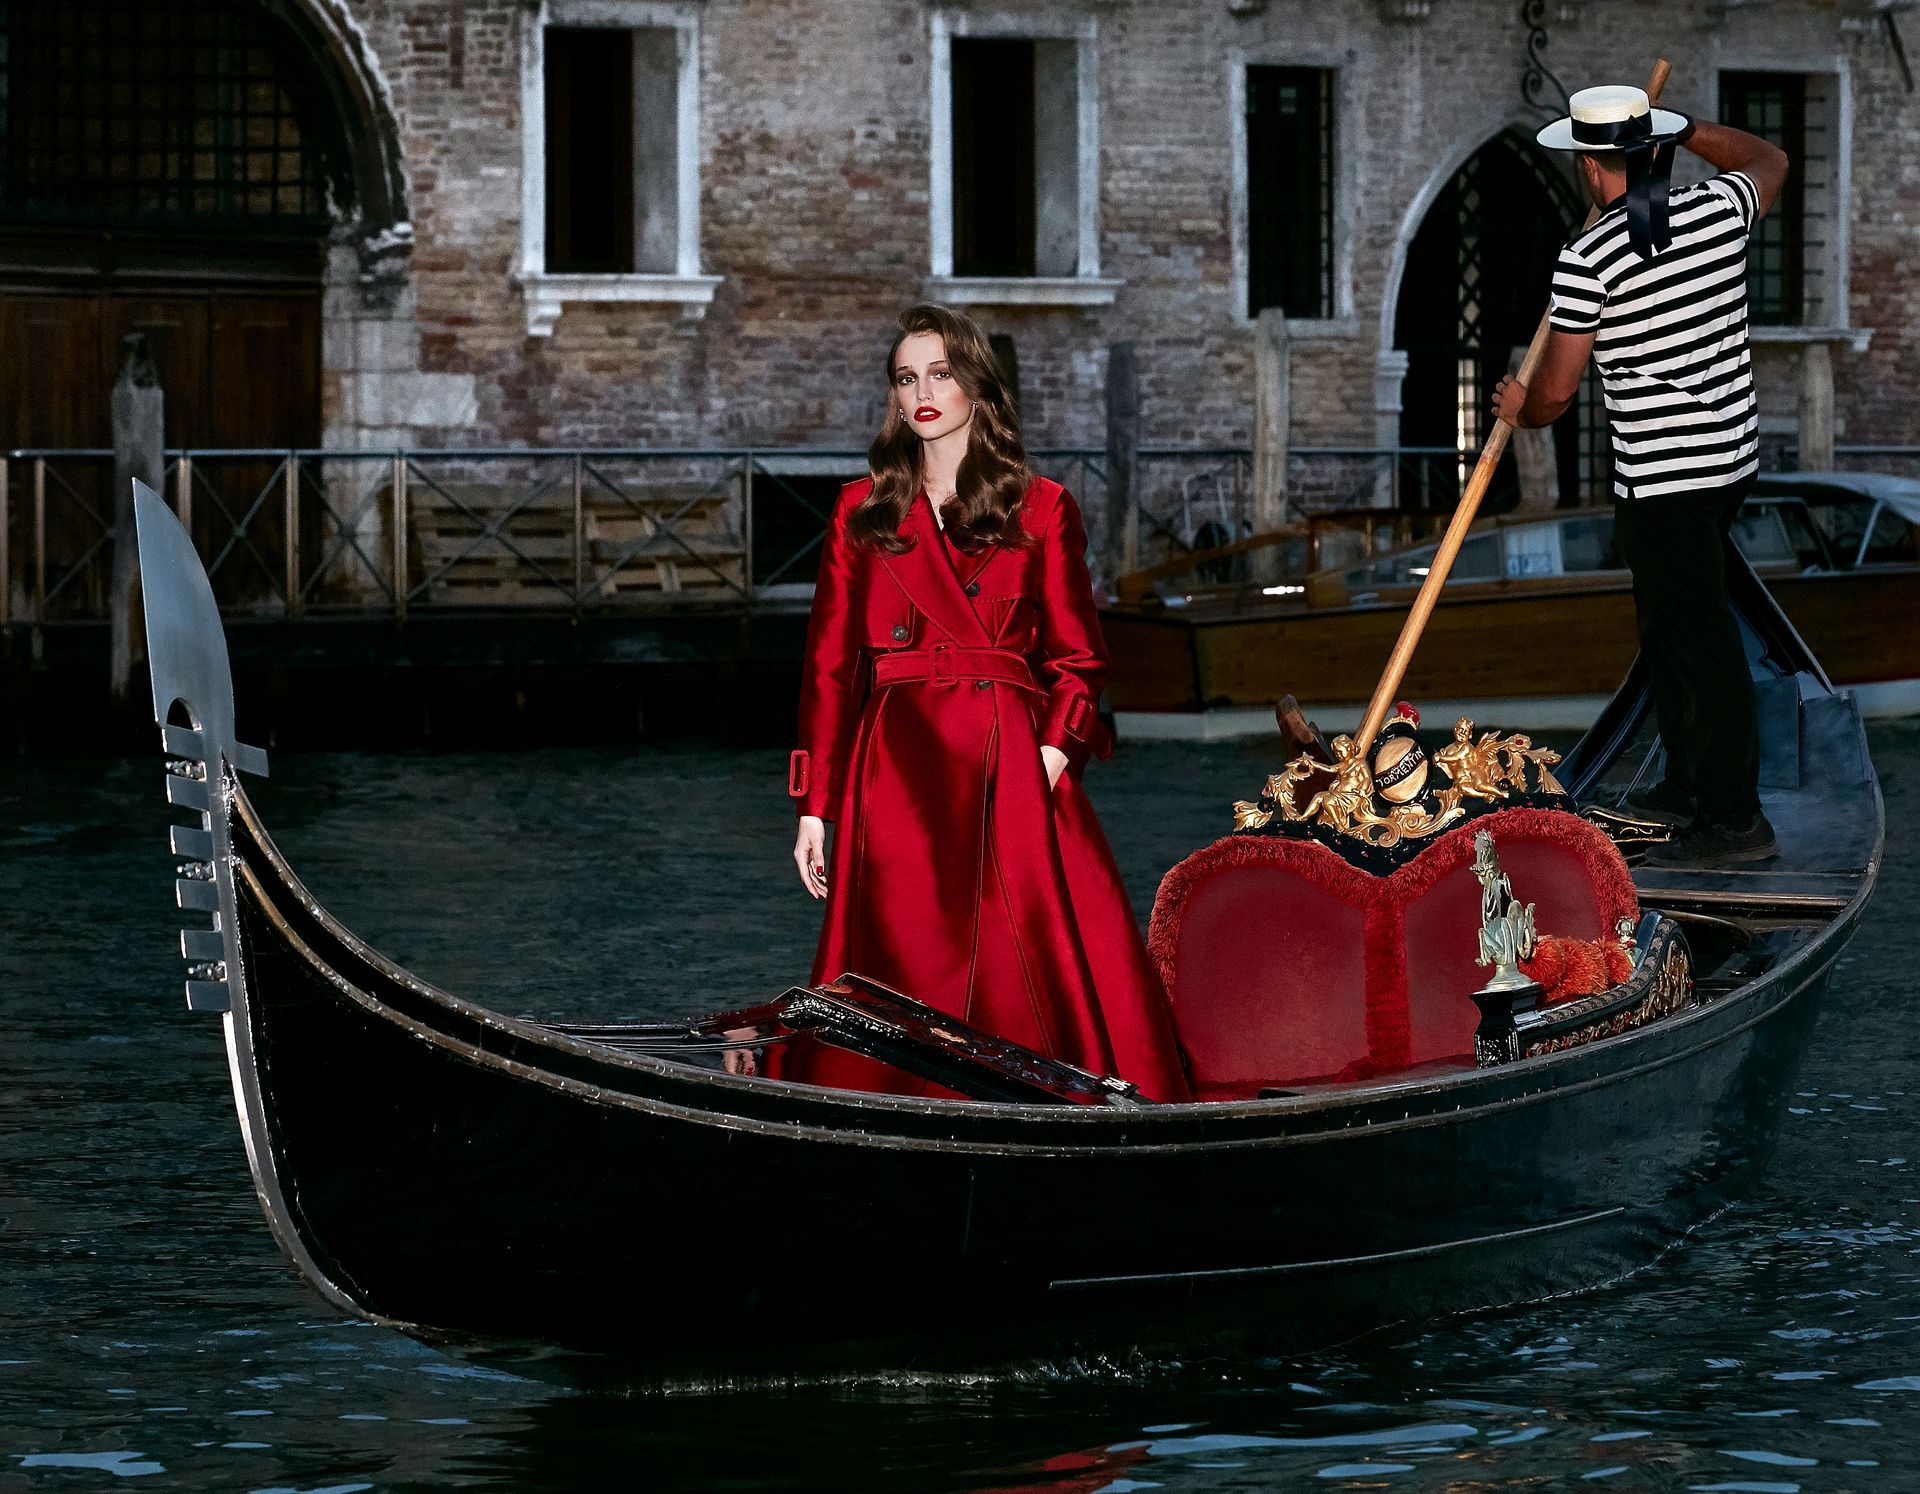 Scopri “Gondola Tour” e vivi Venezia con un’esperienza incredibile creata per te da Palazzina Grassi